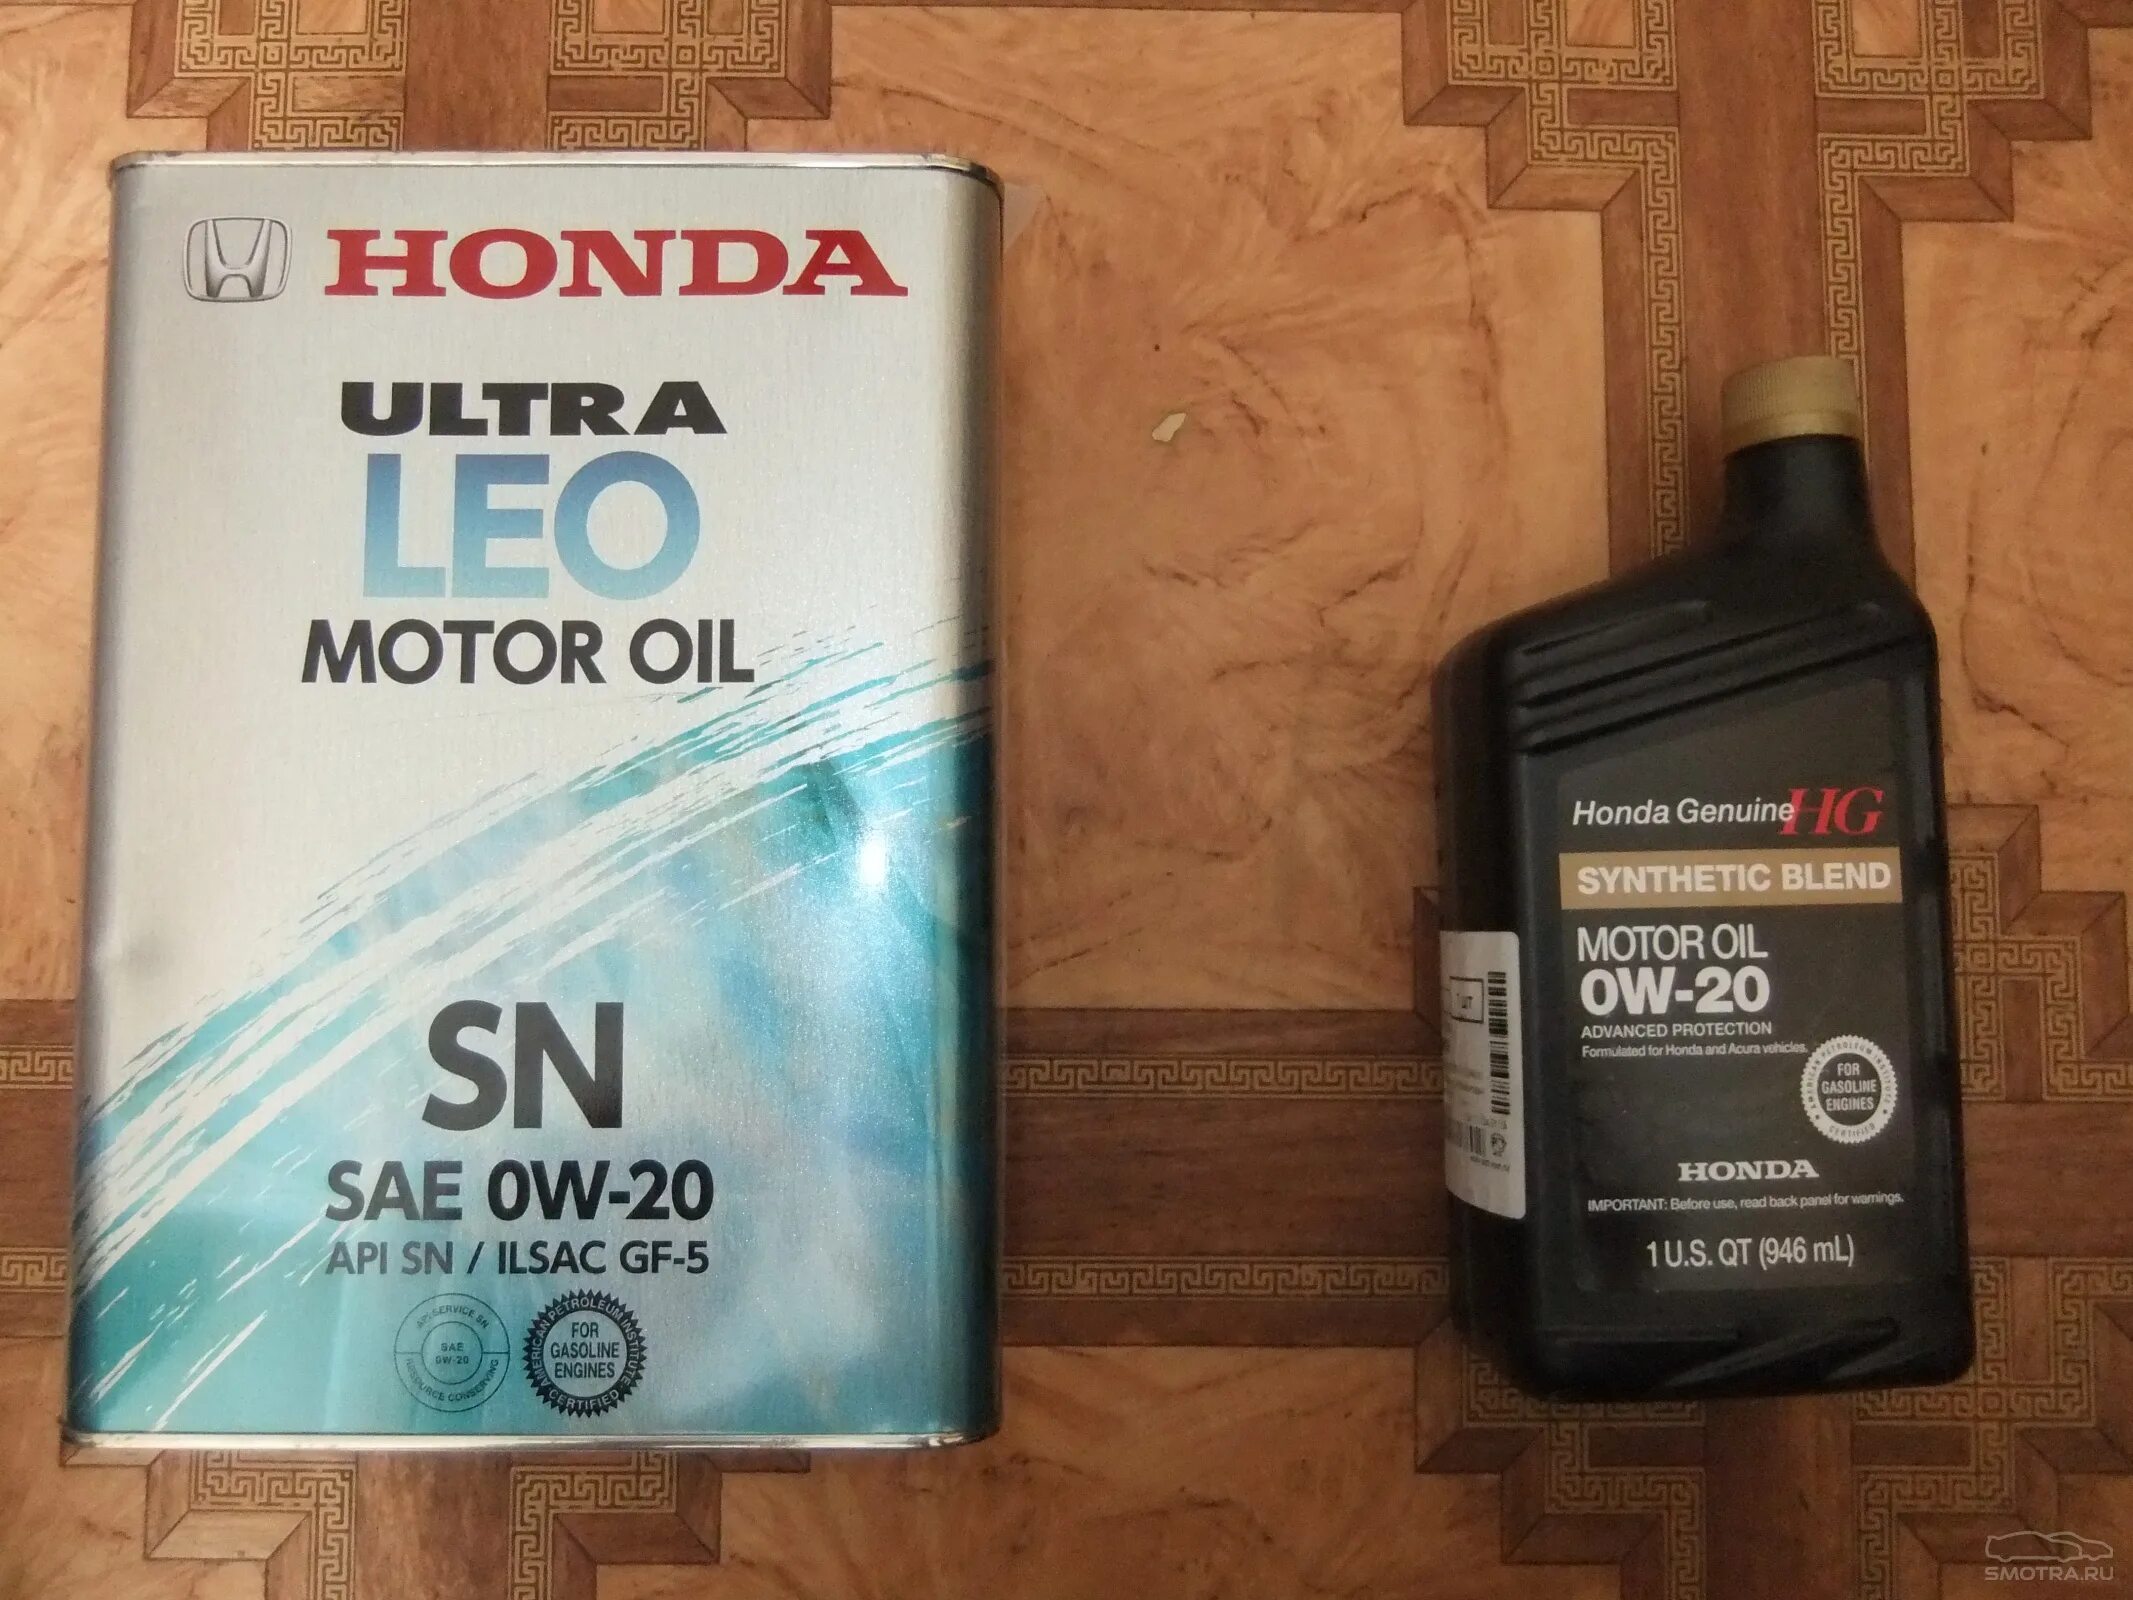 Мотор масло honda. Оригинальное масло Хонда 0w20. Моторное масло Honda CR-V 2013. Honda CR-V 2.0 мотор масла. Honda Synthetic Blend 5w30.